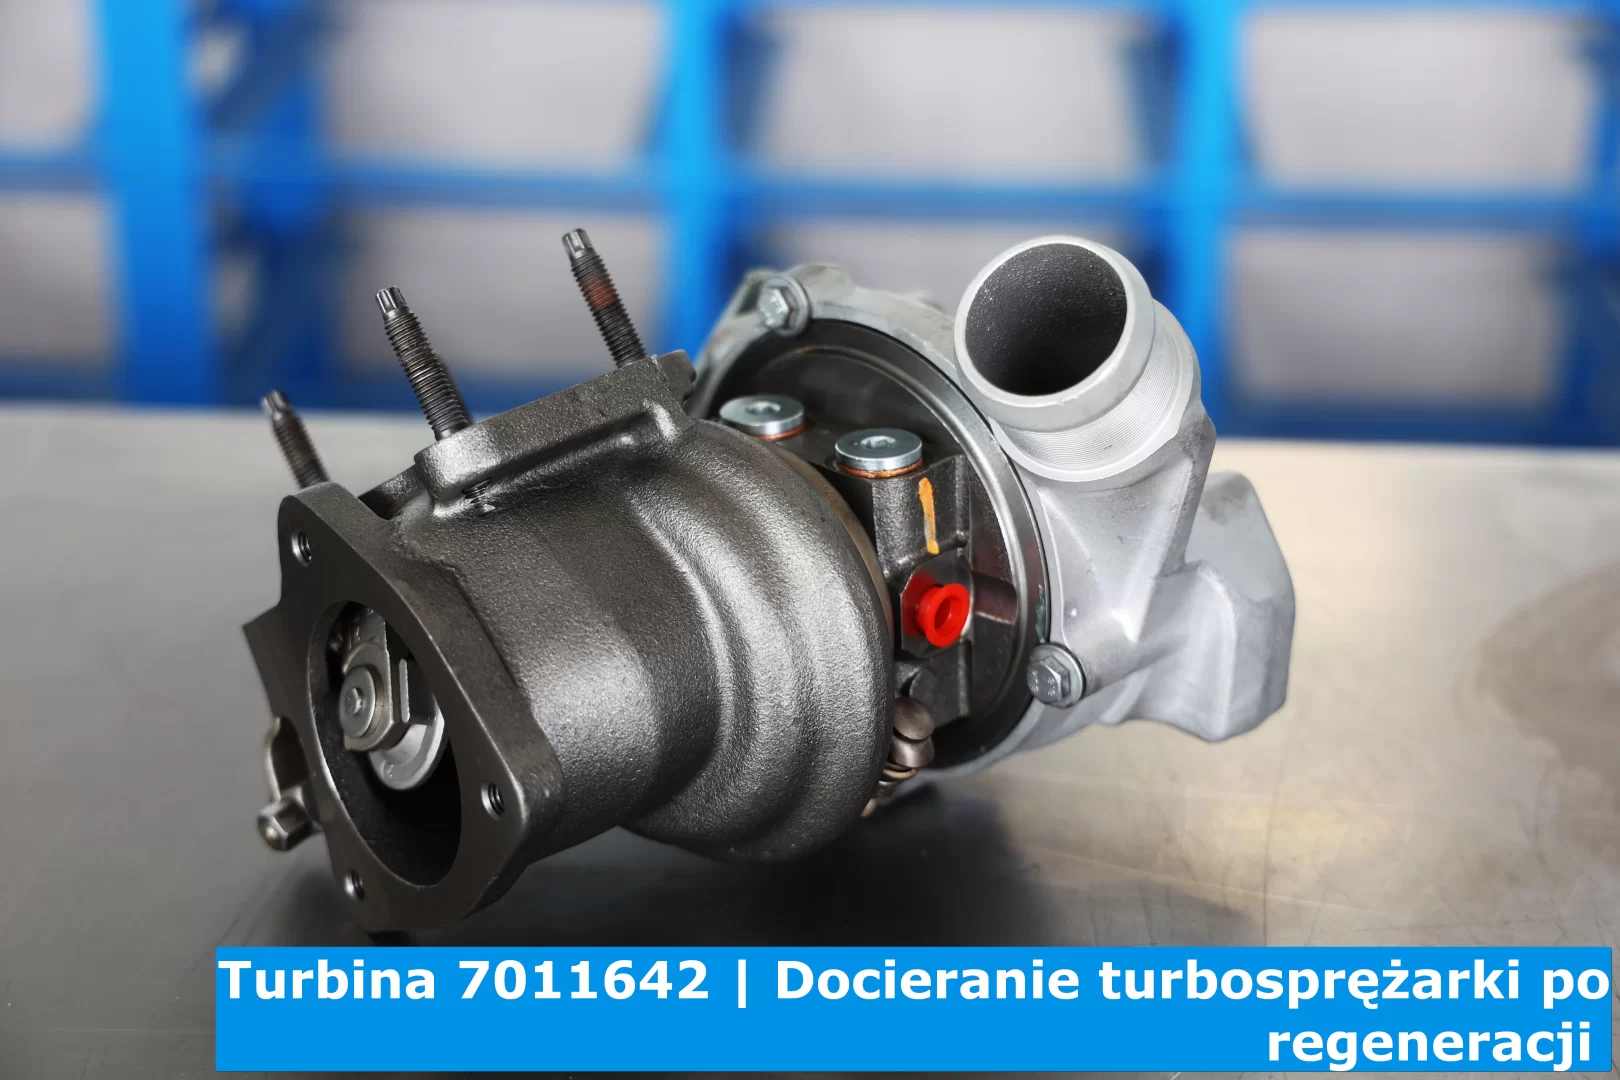 Docieranie turbosprężarki 7011642 po regeneracji